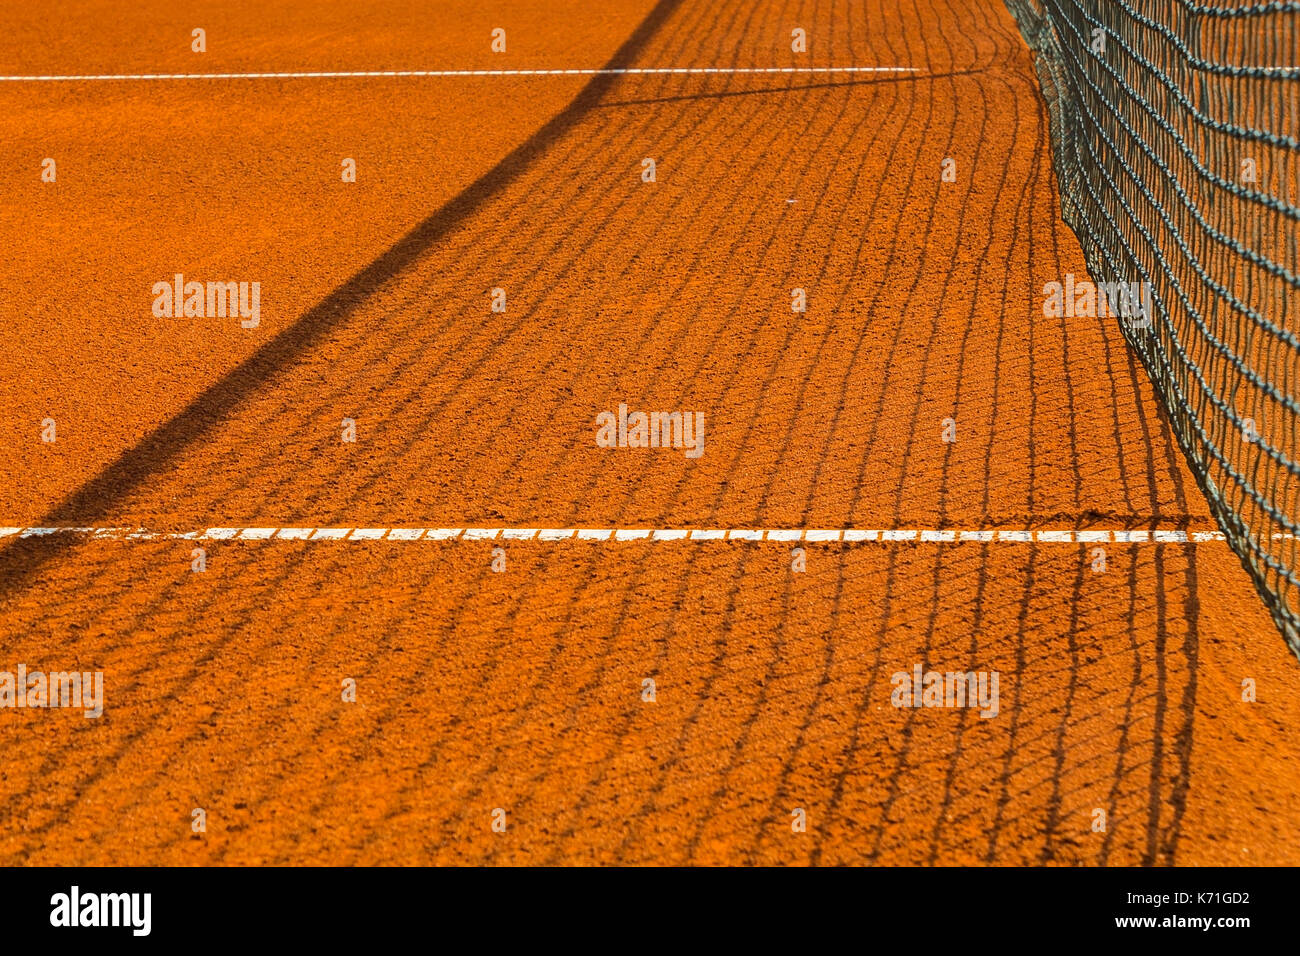 Leere tennis Sandplatz an einem sonnigen Tag Stockfoto